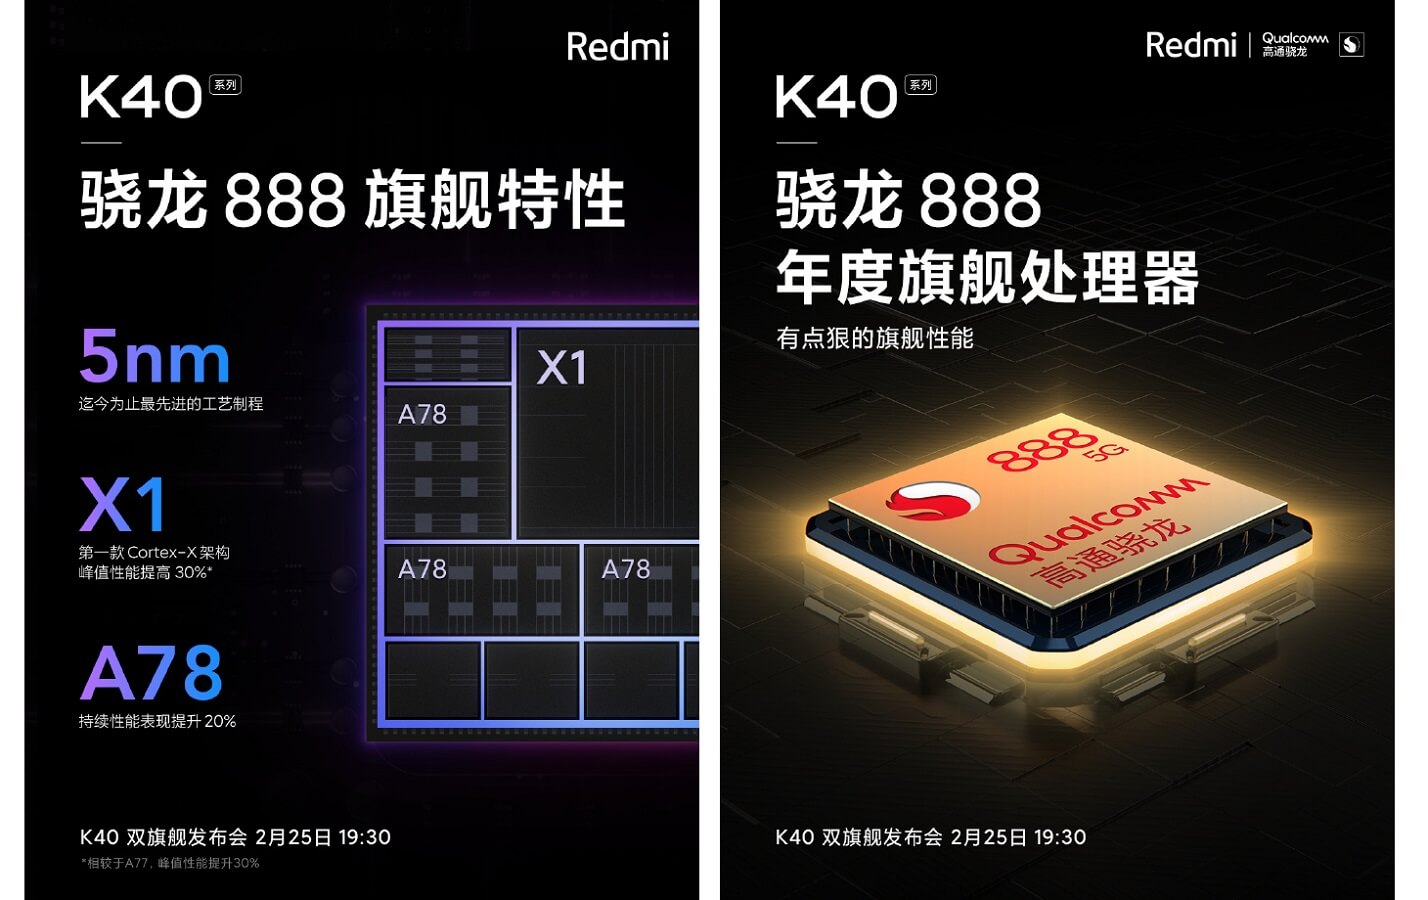 Redmi K40 series snapdragon 888